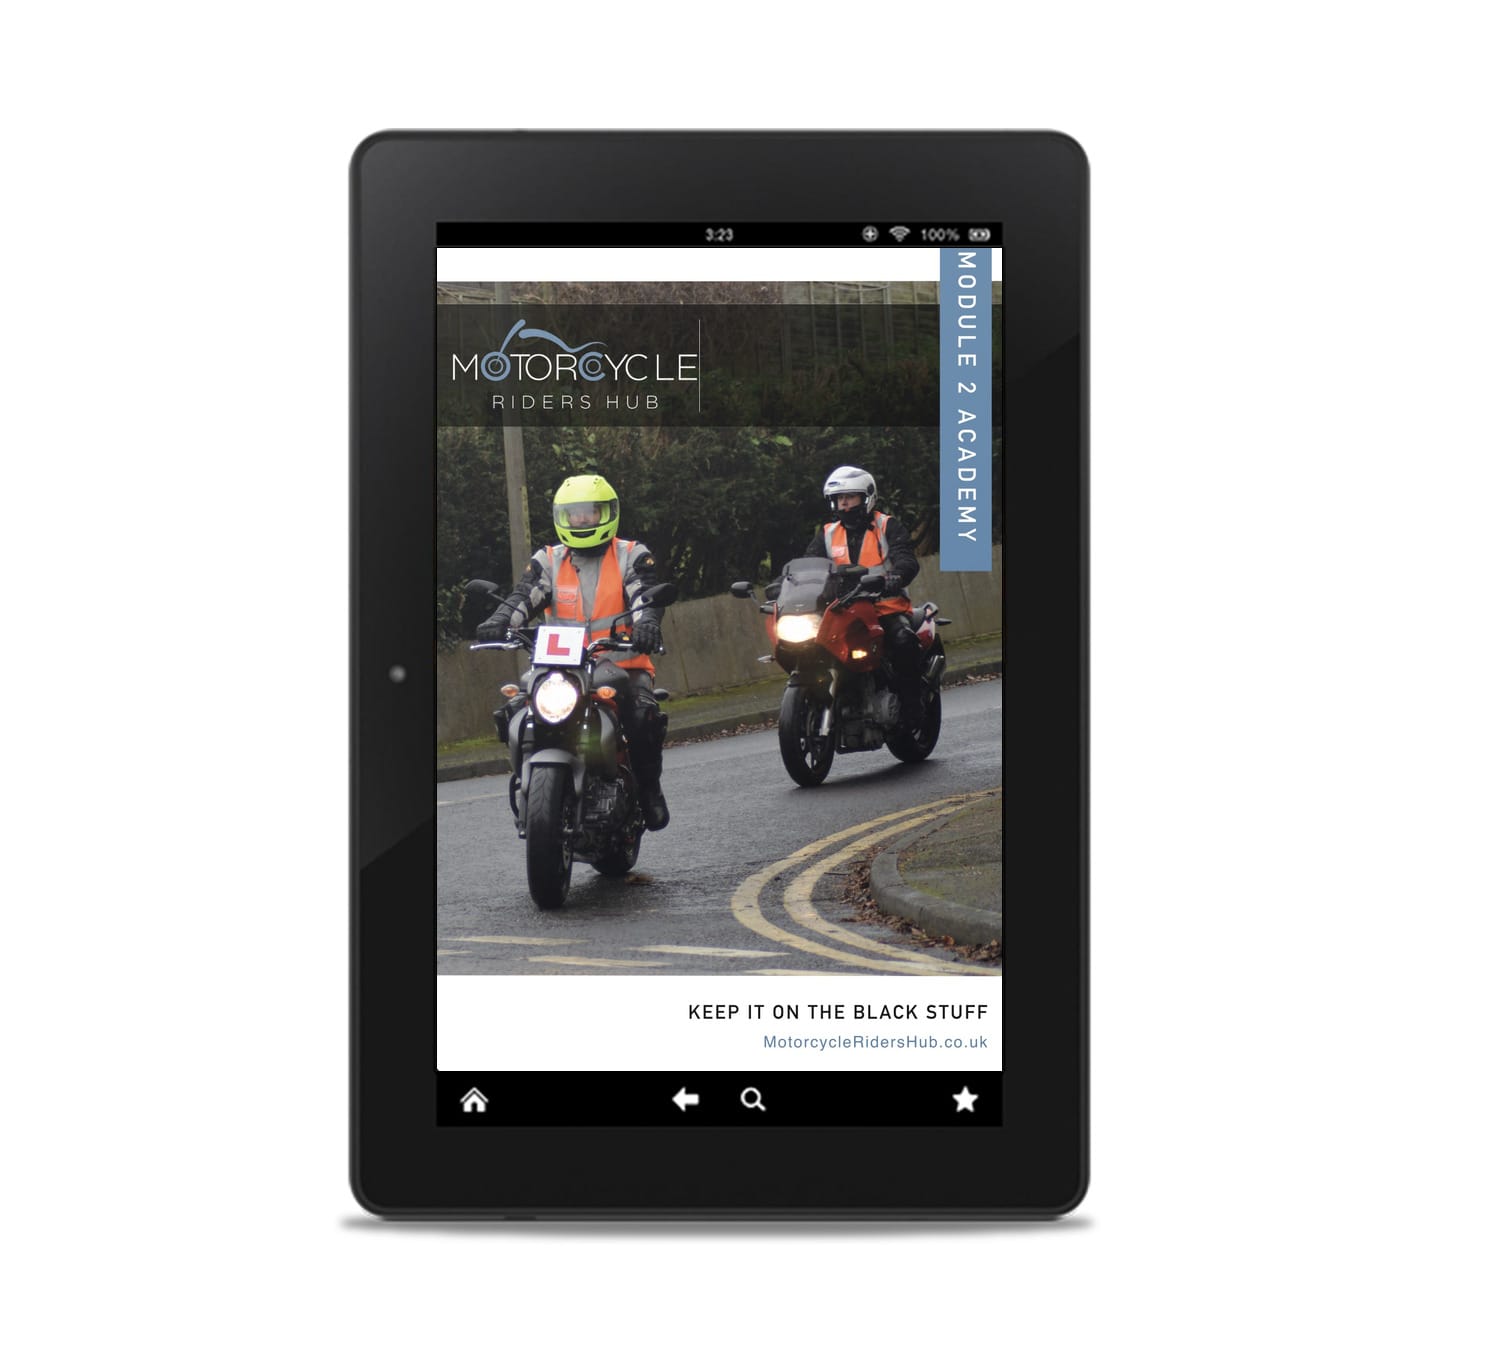 Online Mod 2 Motorcycle Test course digital platform